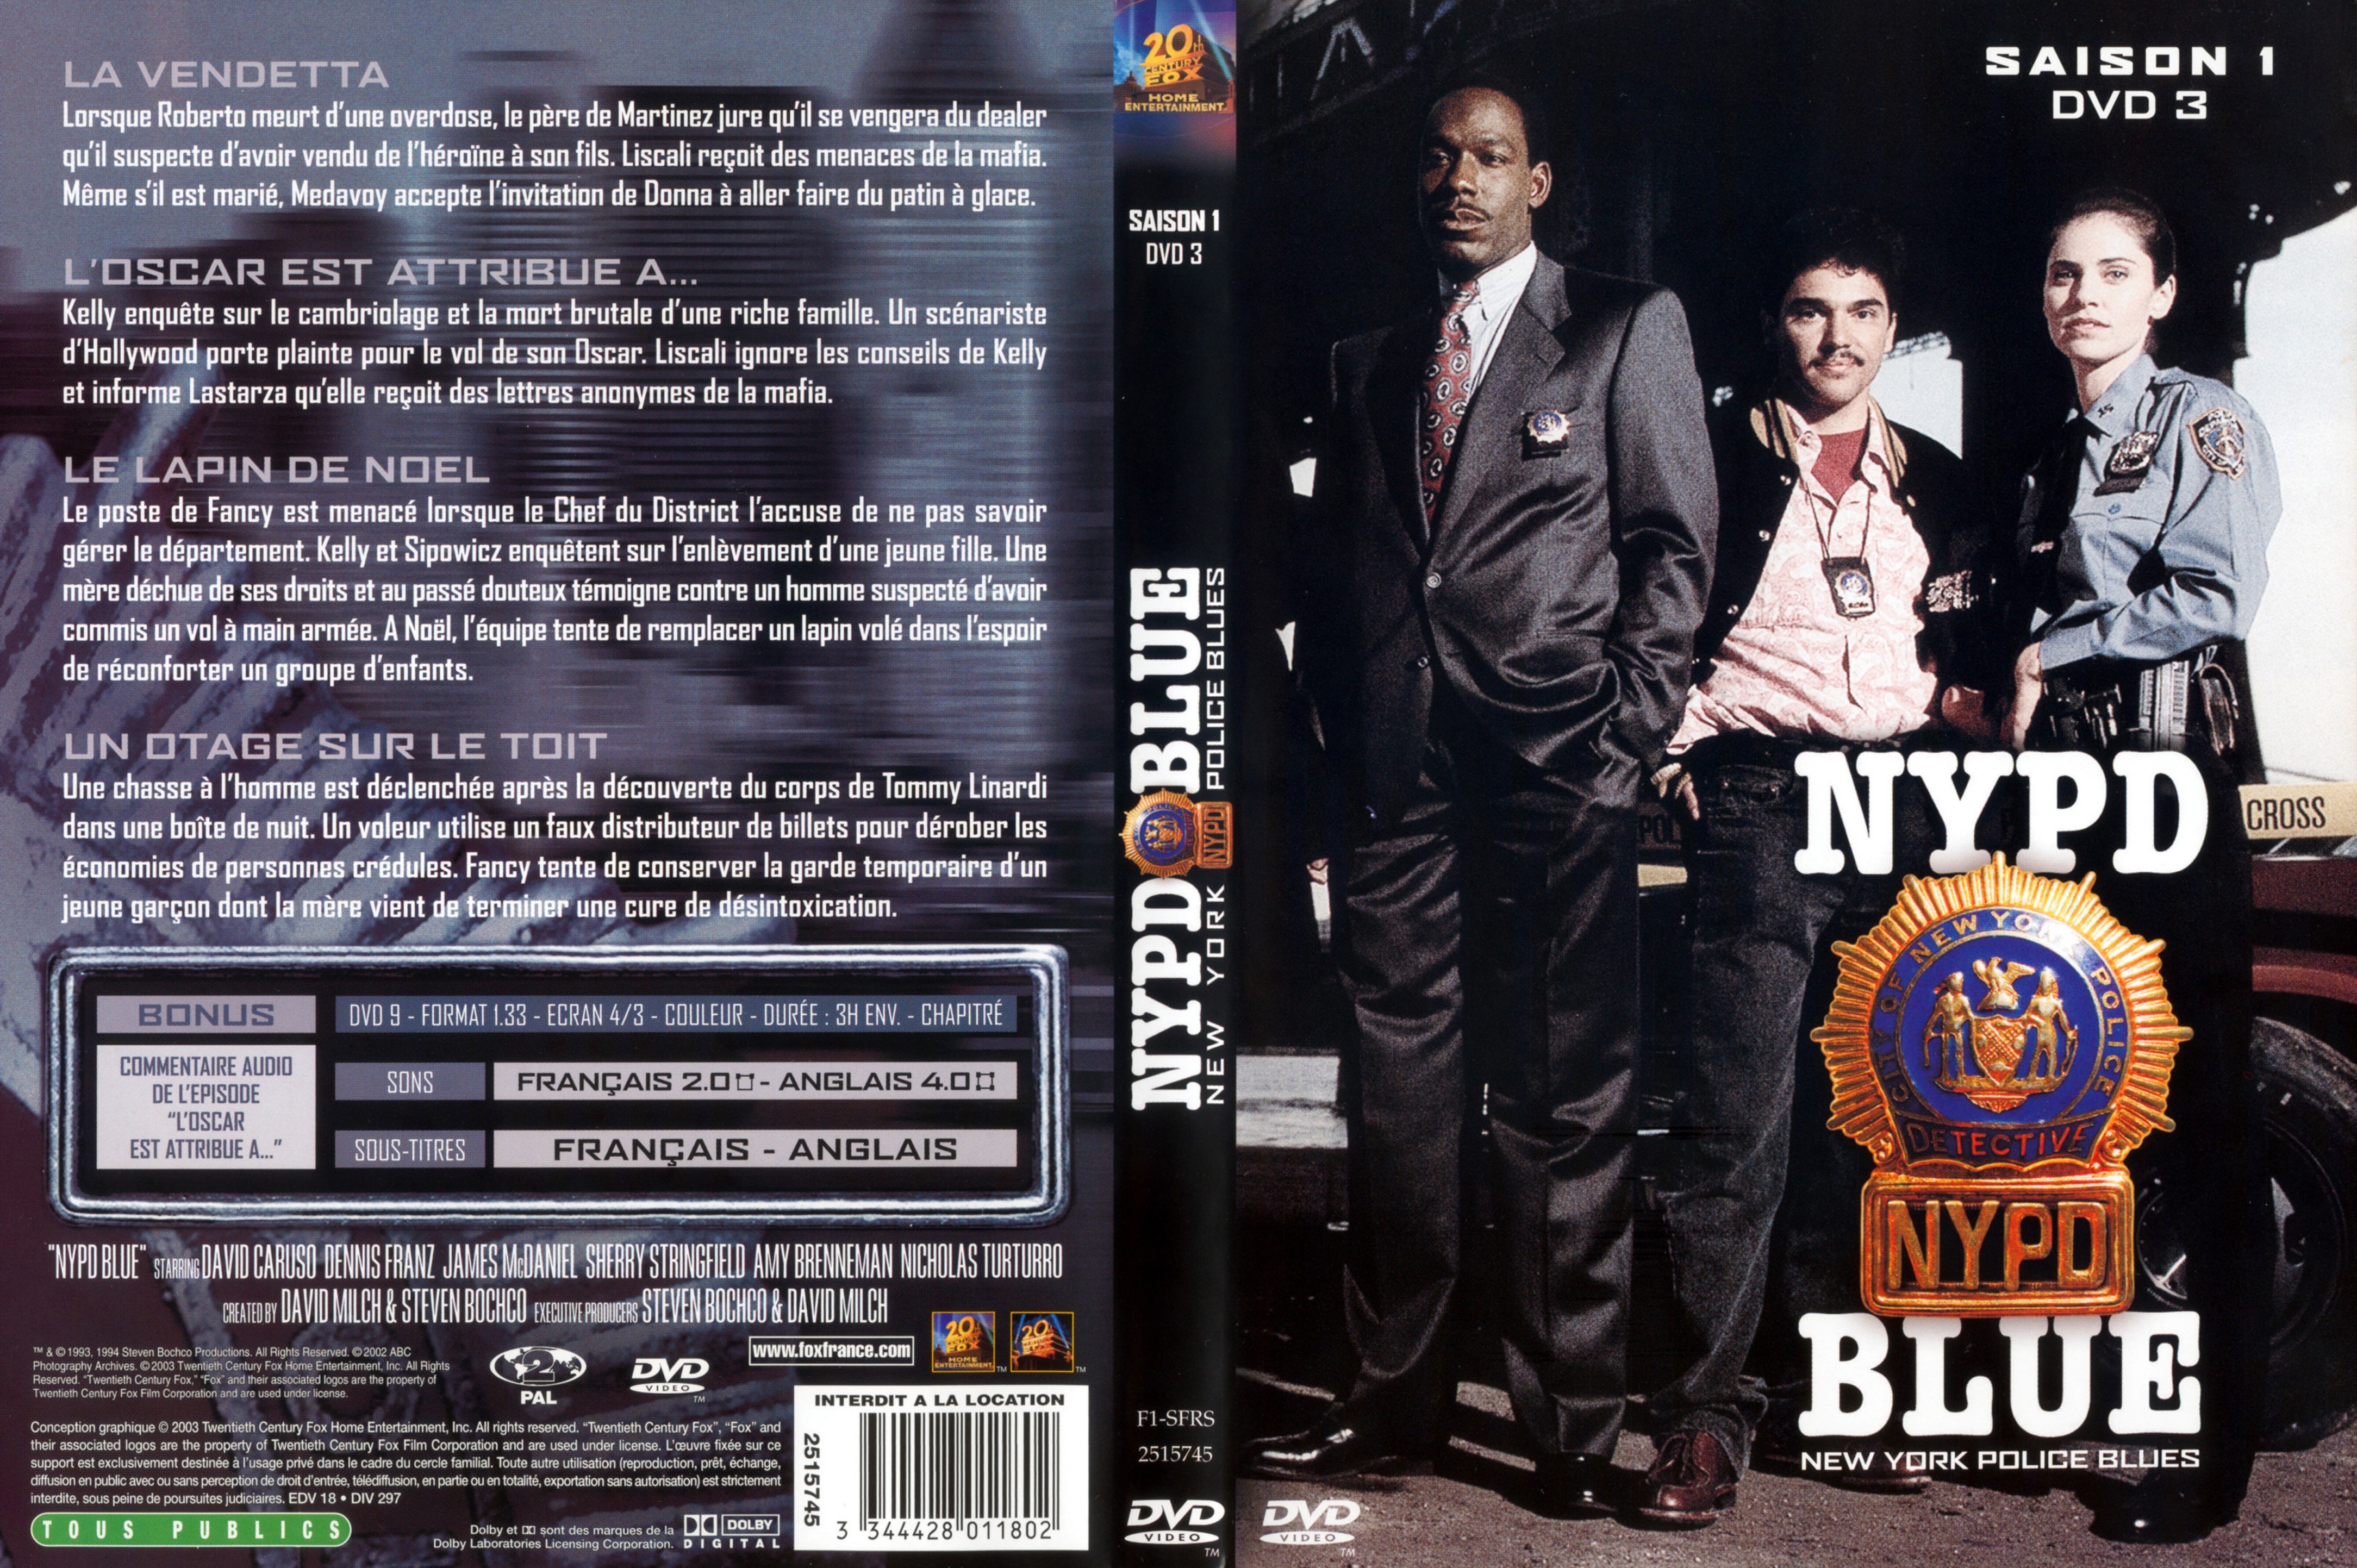 Jaquette DVD NYPD Blue saison 01 dvd 03